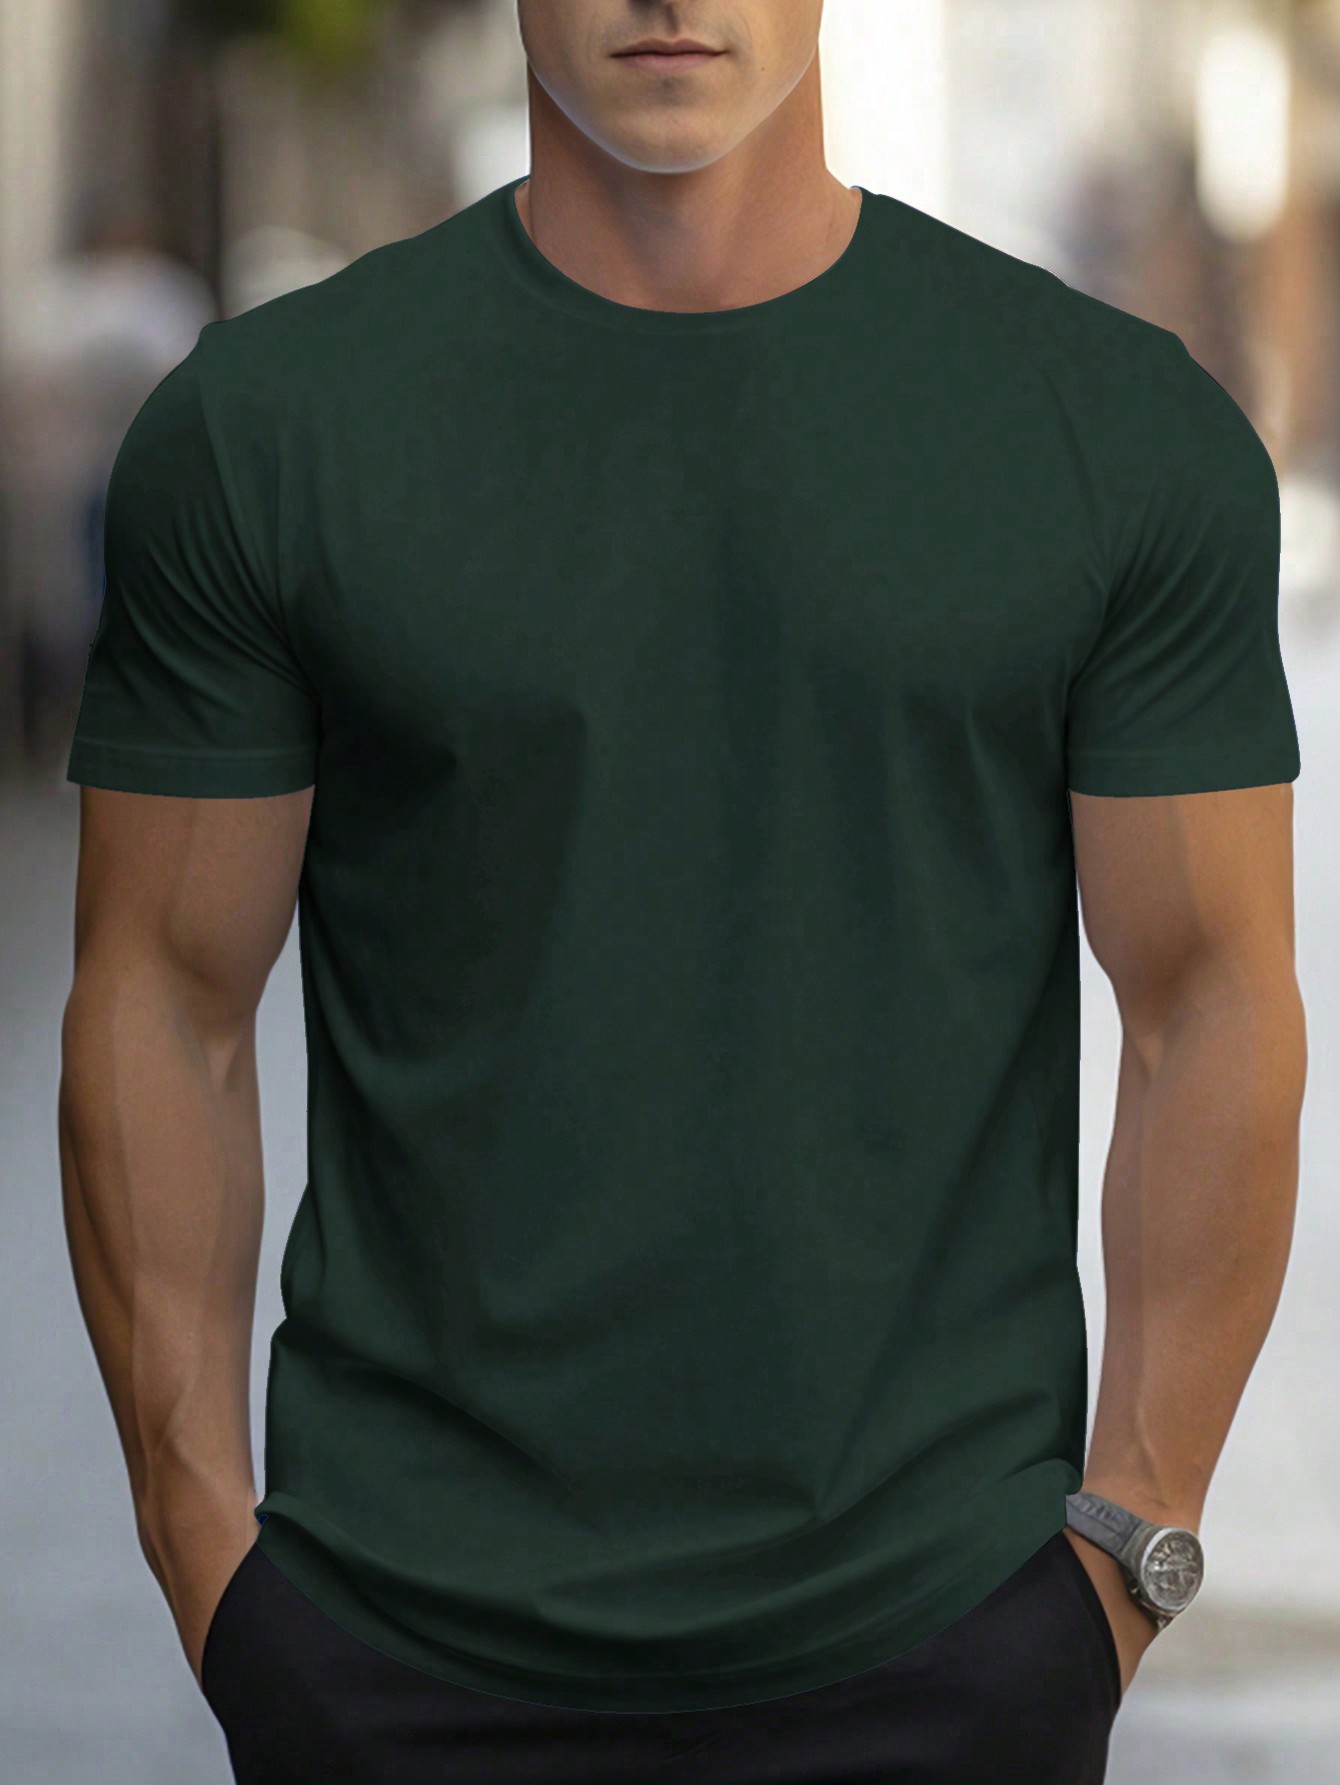 Мужская однотонная футболка с короткими рукавами Manfinity, темно-зеленый футболка твоё однотонная 44 размер